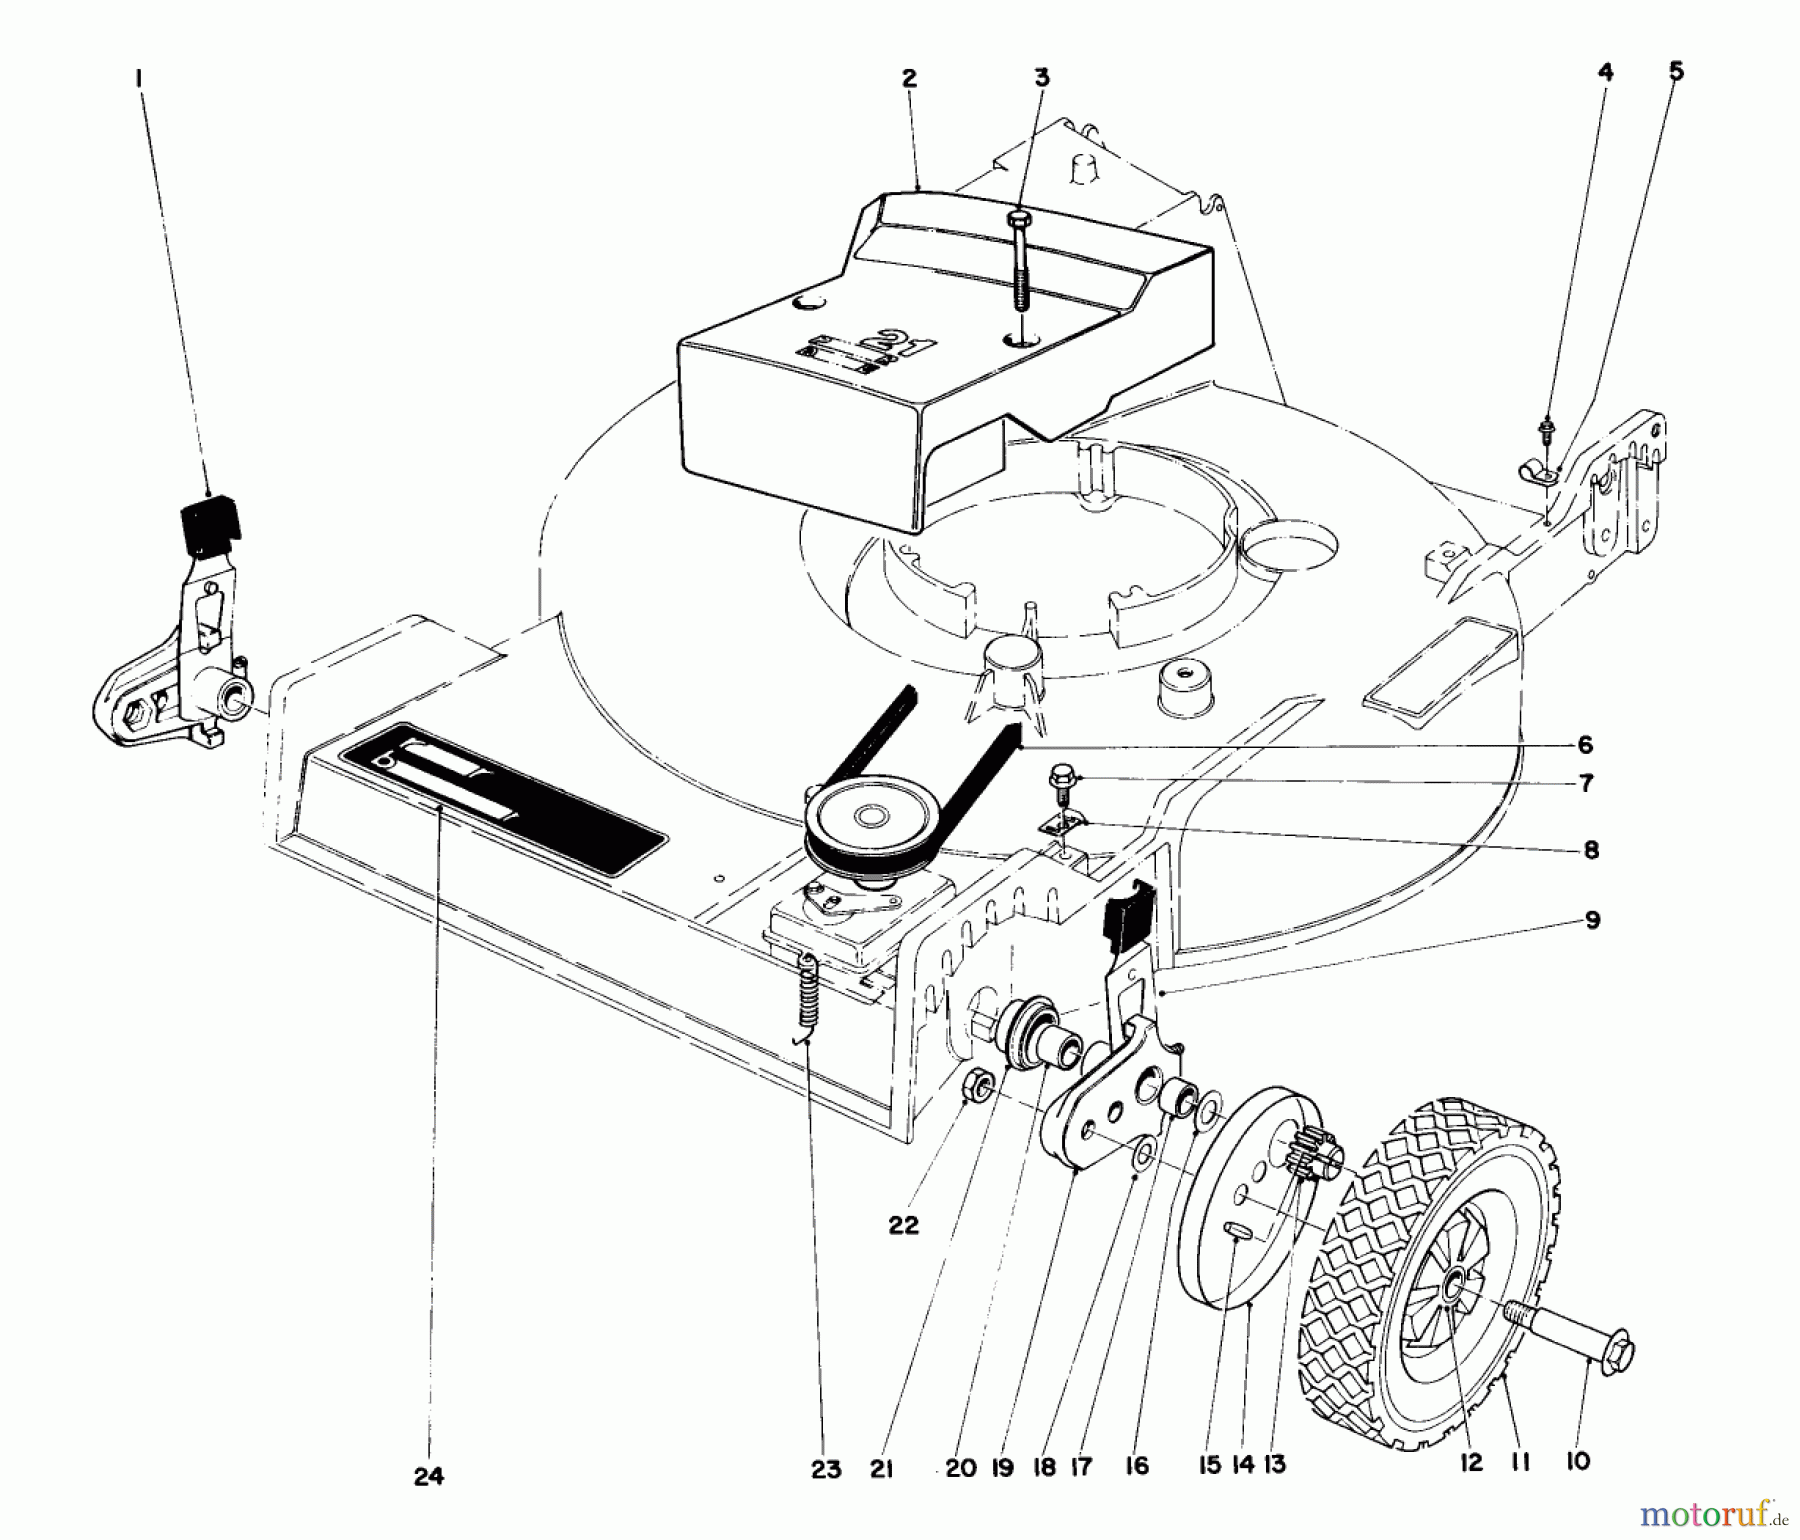  Toro Neu Mowers, Walk-Behind Seite 1 20773 - Toro Lawnmower, 1983 (3000001-3999999) FRONT WHEEL & PIVOT ARM ASSEMBLY